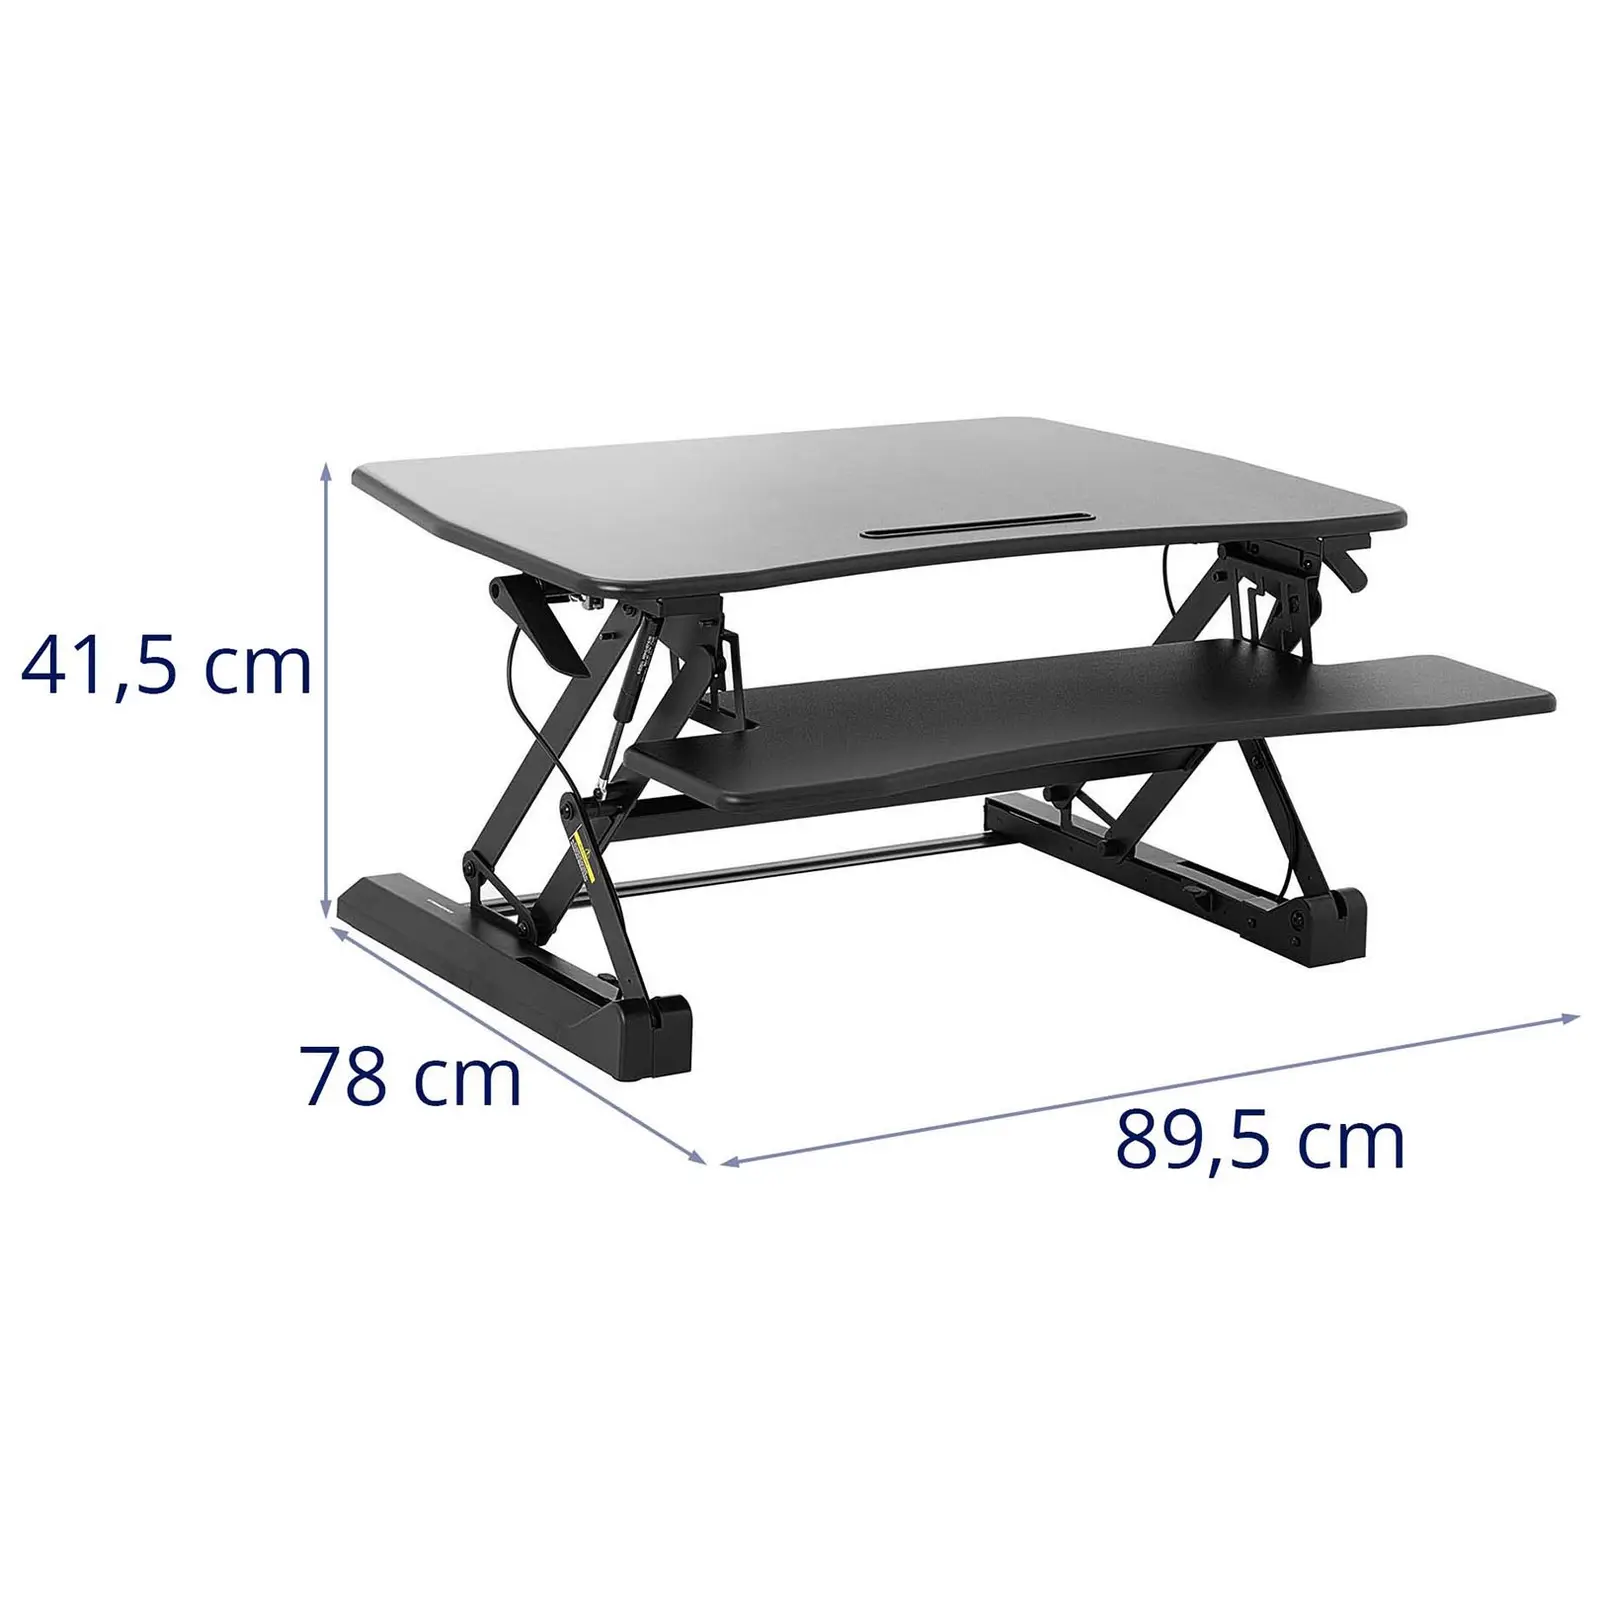 Nástavec na stůl - plynulé nastavení výšky - 16,5 až 41,5 cm